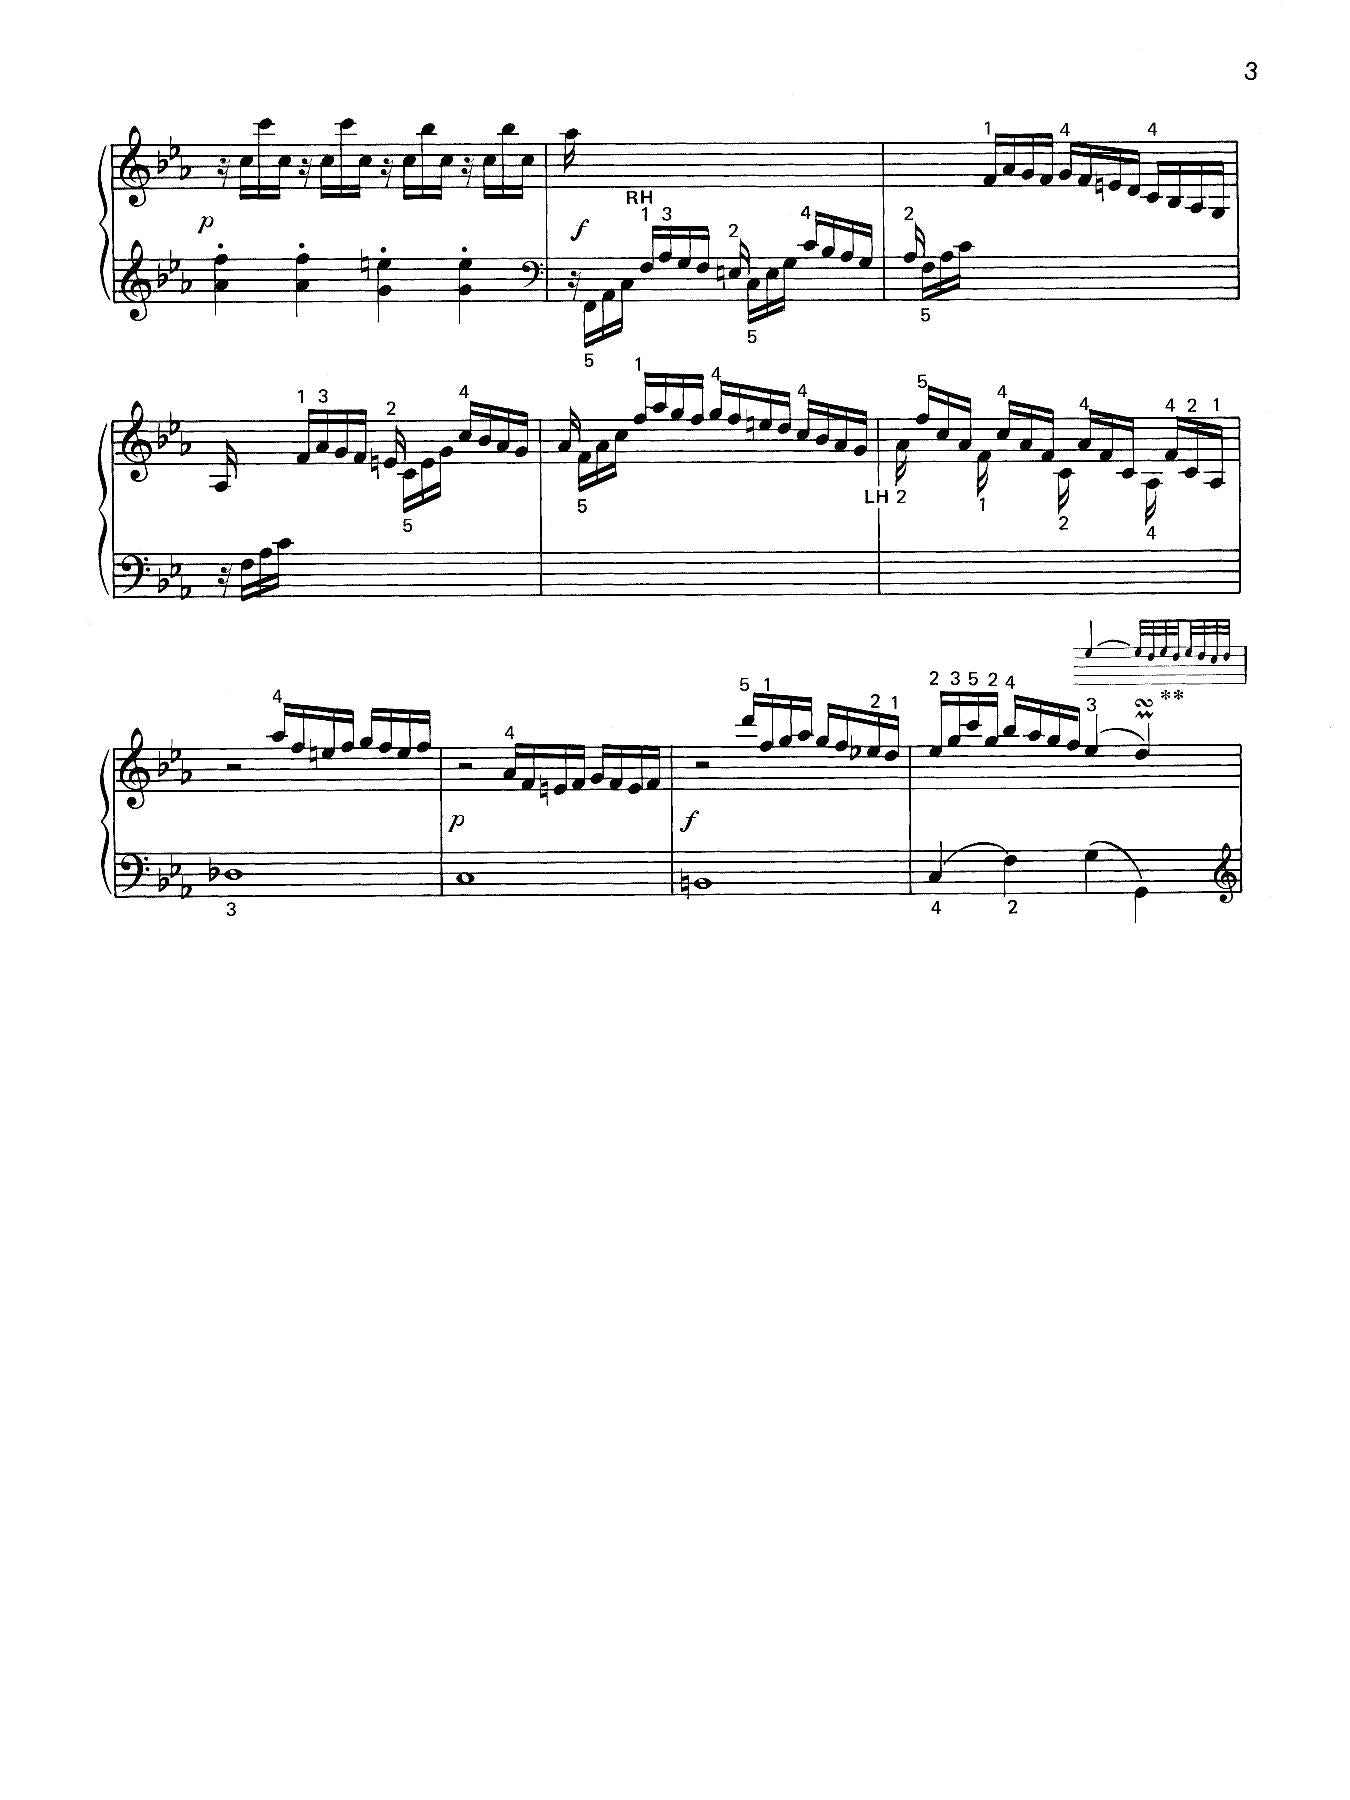 C. P. E. Bach: Solfeggio in C minor for Piano Solo